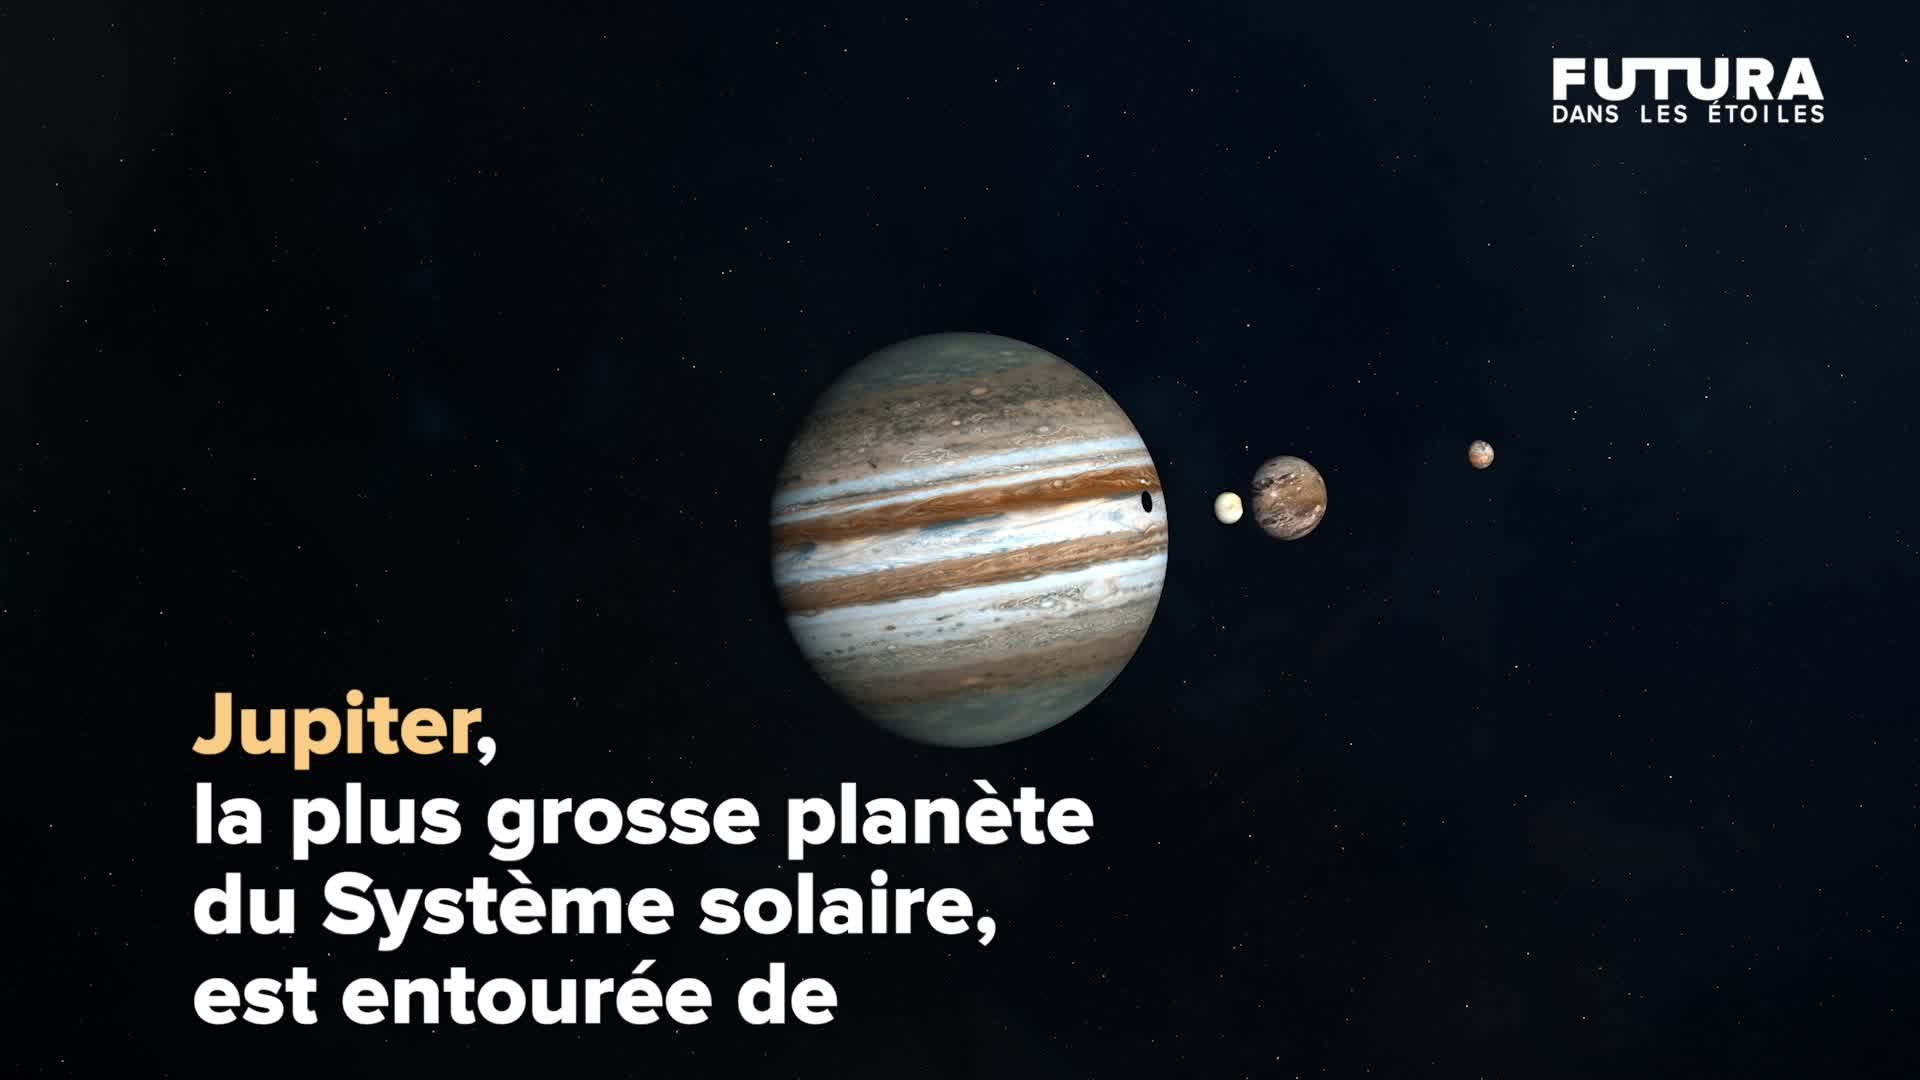 Combien de lunes possède Jupiter ? La plus grosse lune du système